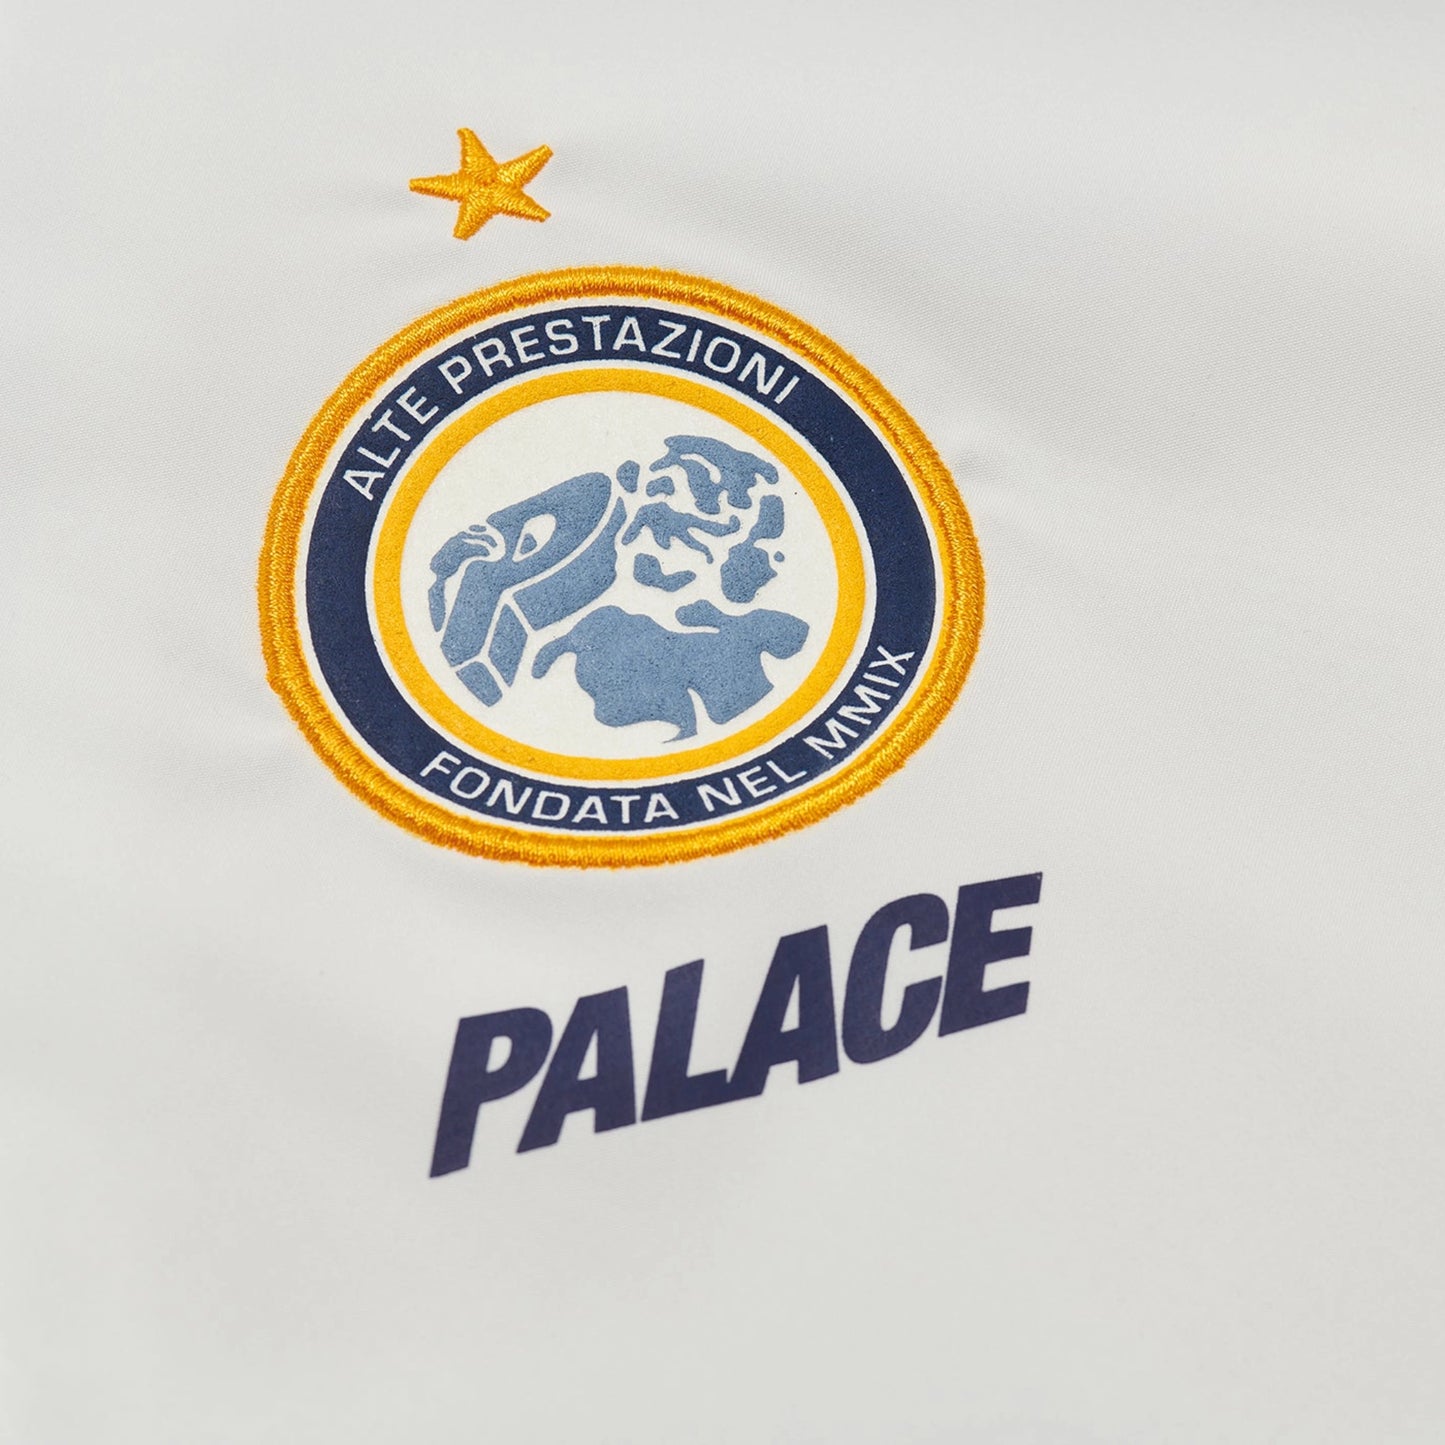 Palace x Umbro Training Track Jacket White